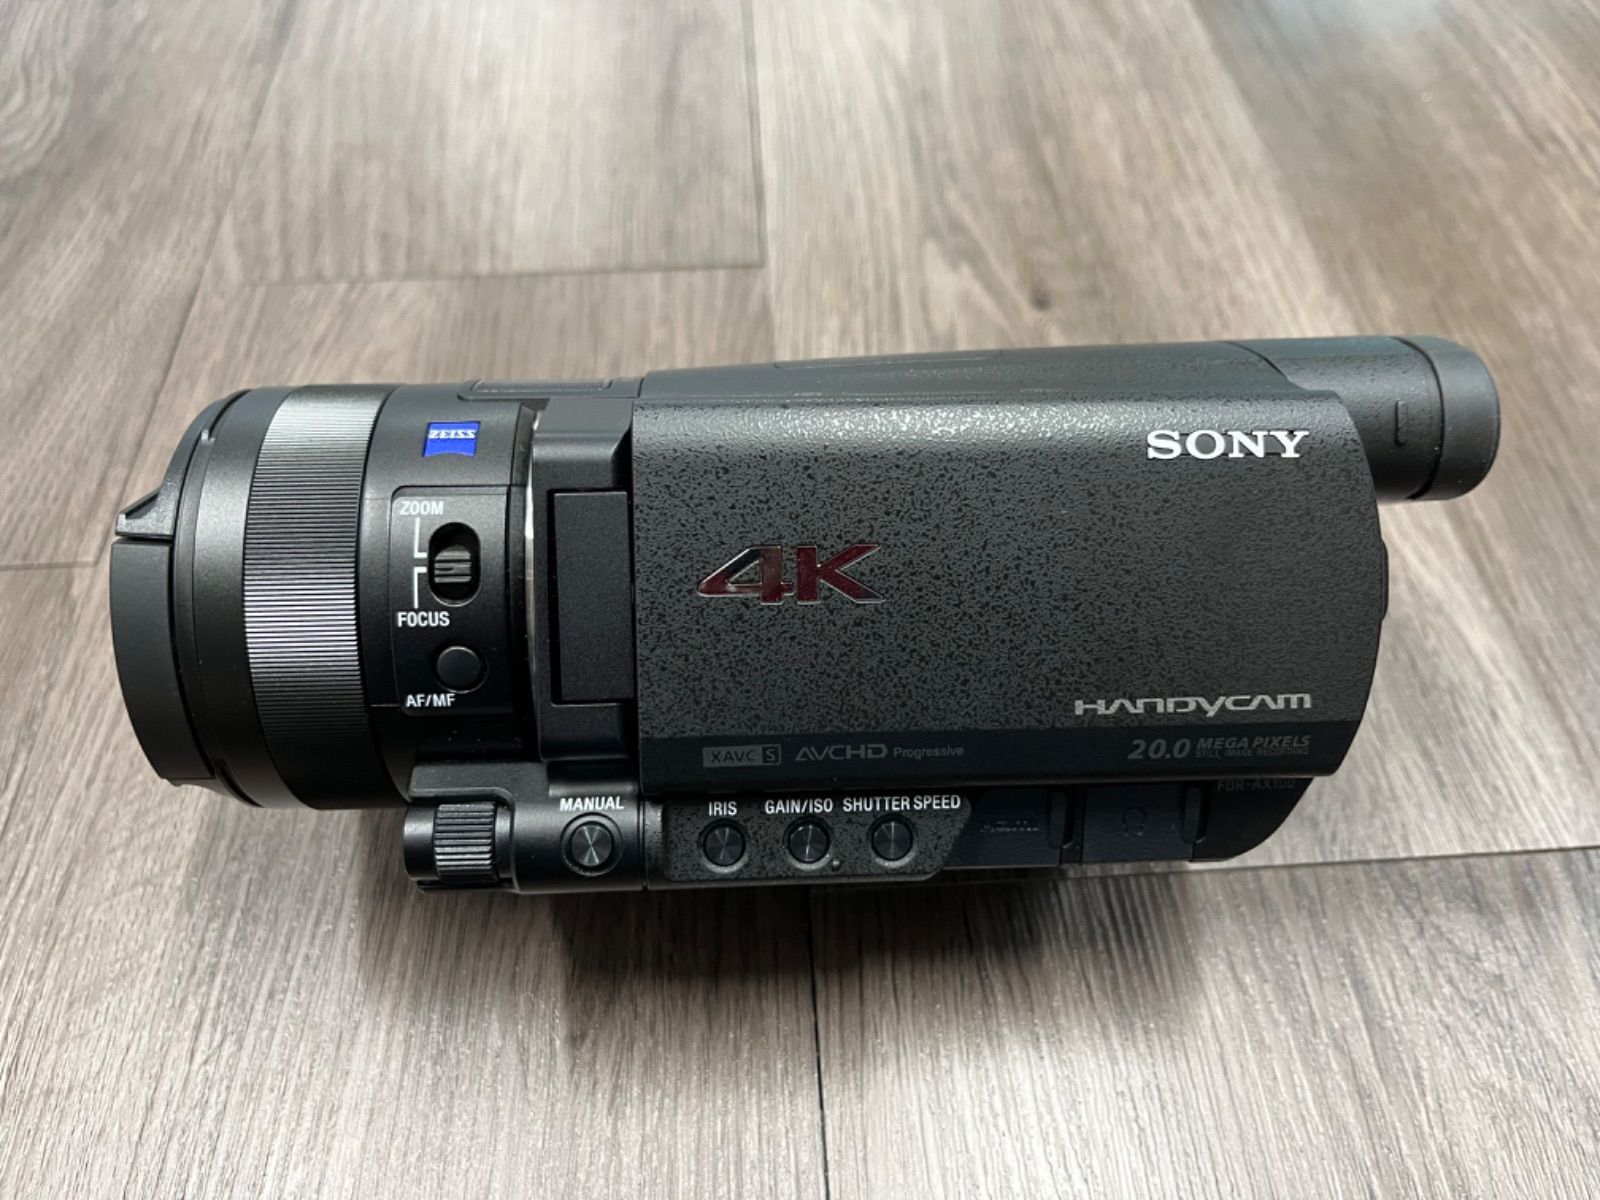 ソニー SONY ビデオカメラ FDR-AX100 4K 光学12倍 ブラック Handycam FDR-AX100 BC - 3